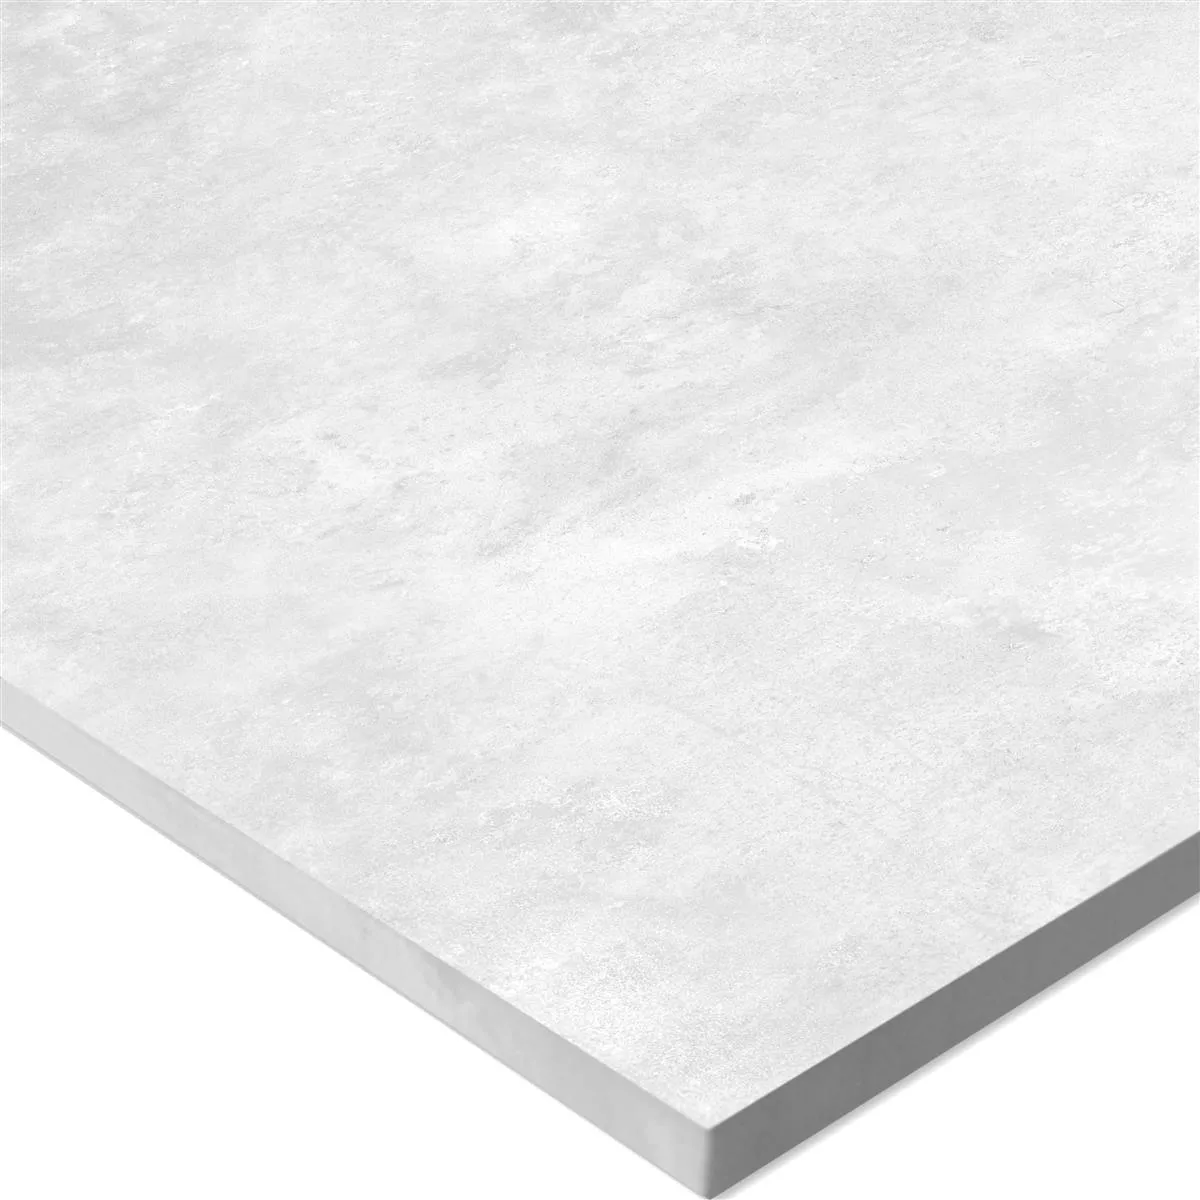 Πρότυπο Πλακάκι Δαπέδου Illusion Μεταλλική Εμφάνιση Lappato Ασπρο 120x120cm